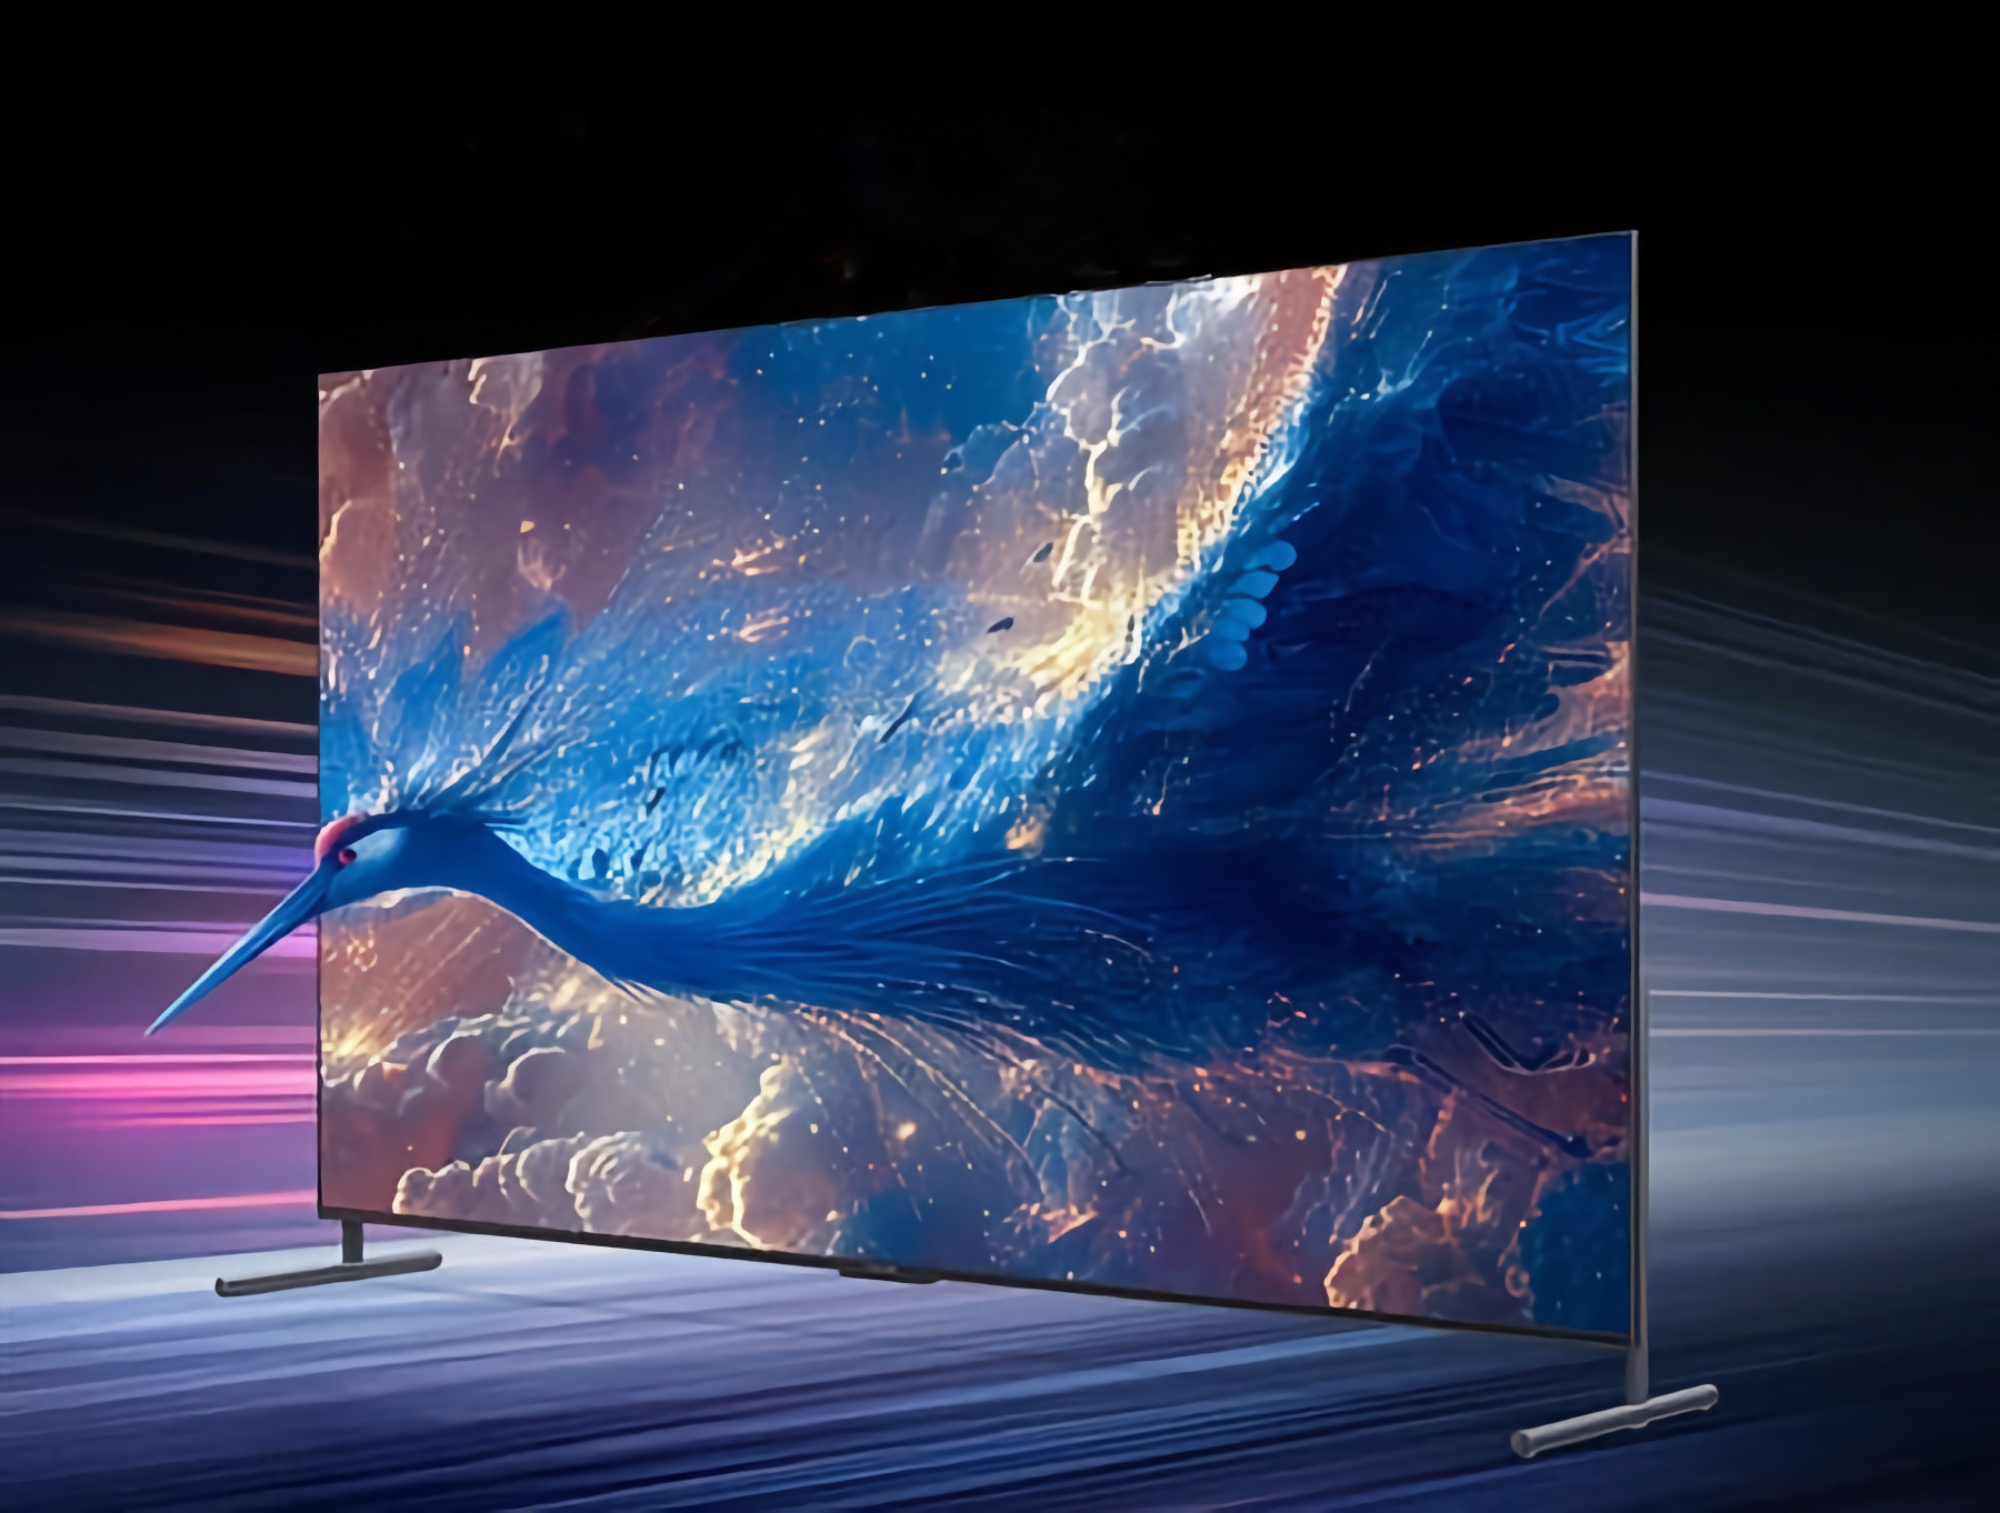 TCL onthulde een nieuwe 100-inch TV met 4K-resolutie, 144Hz verversingssnelheid en 540 backlight zones